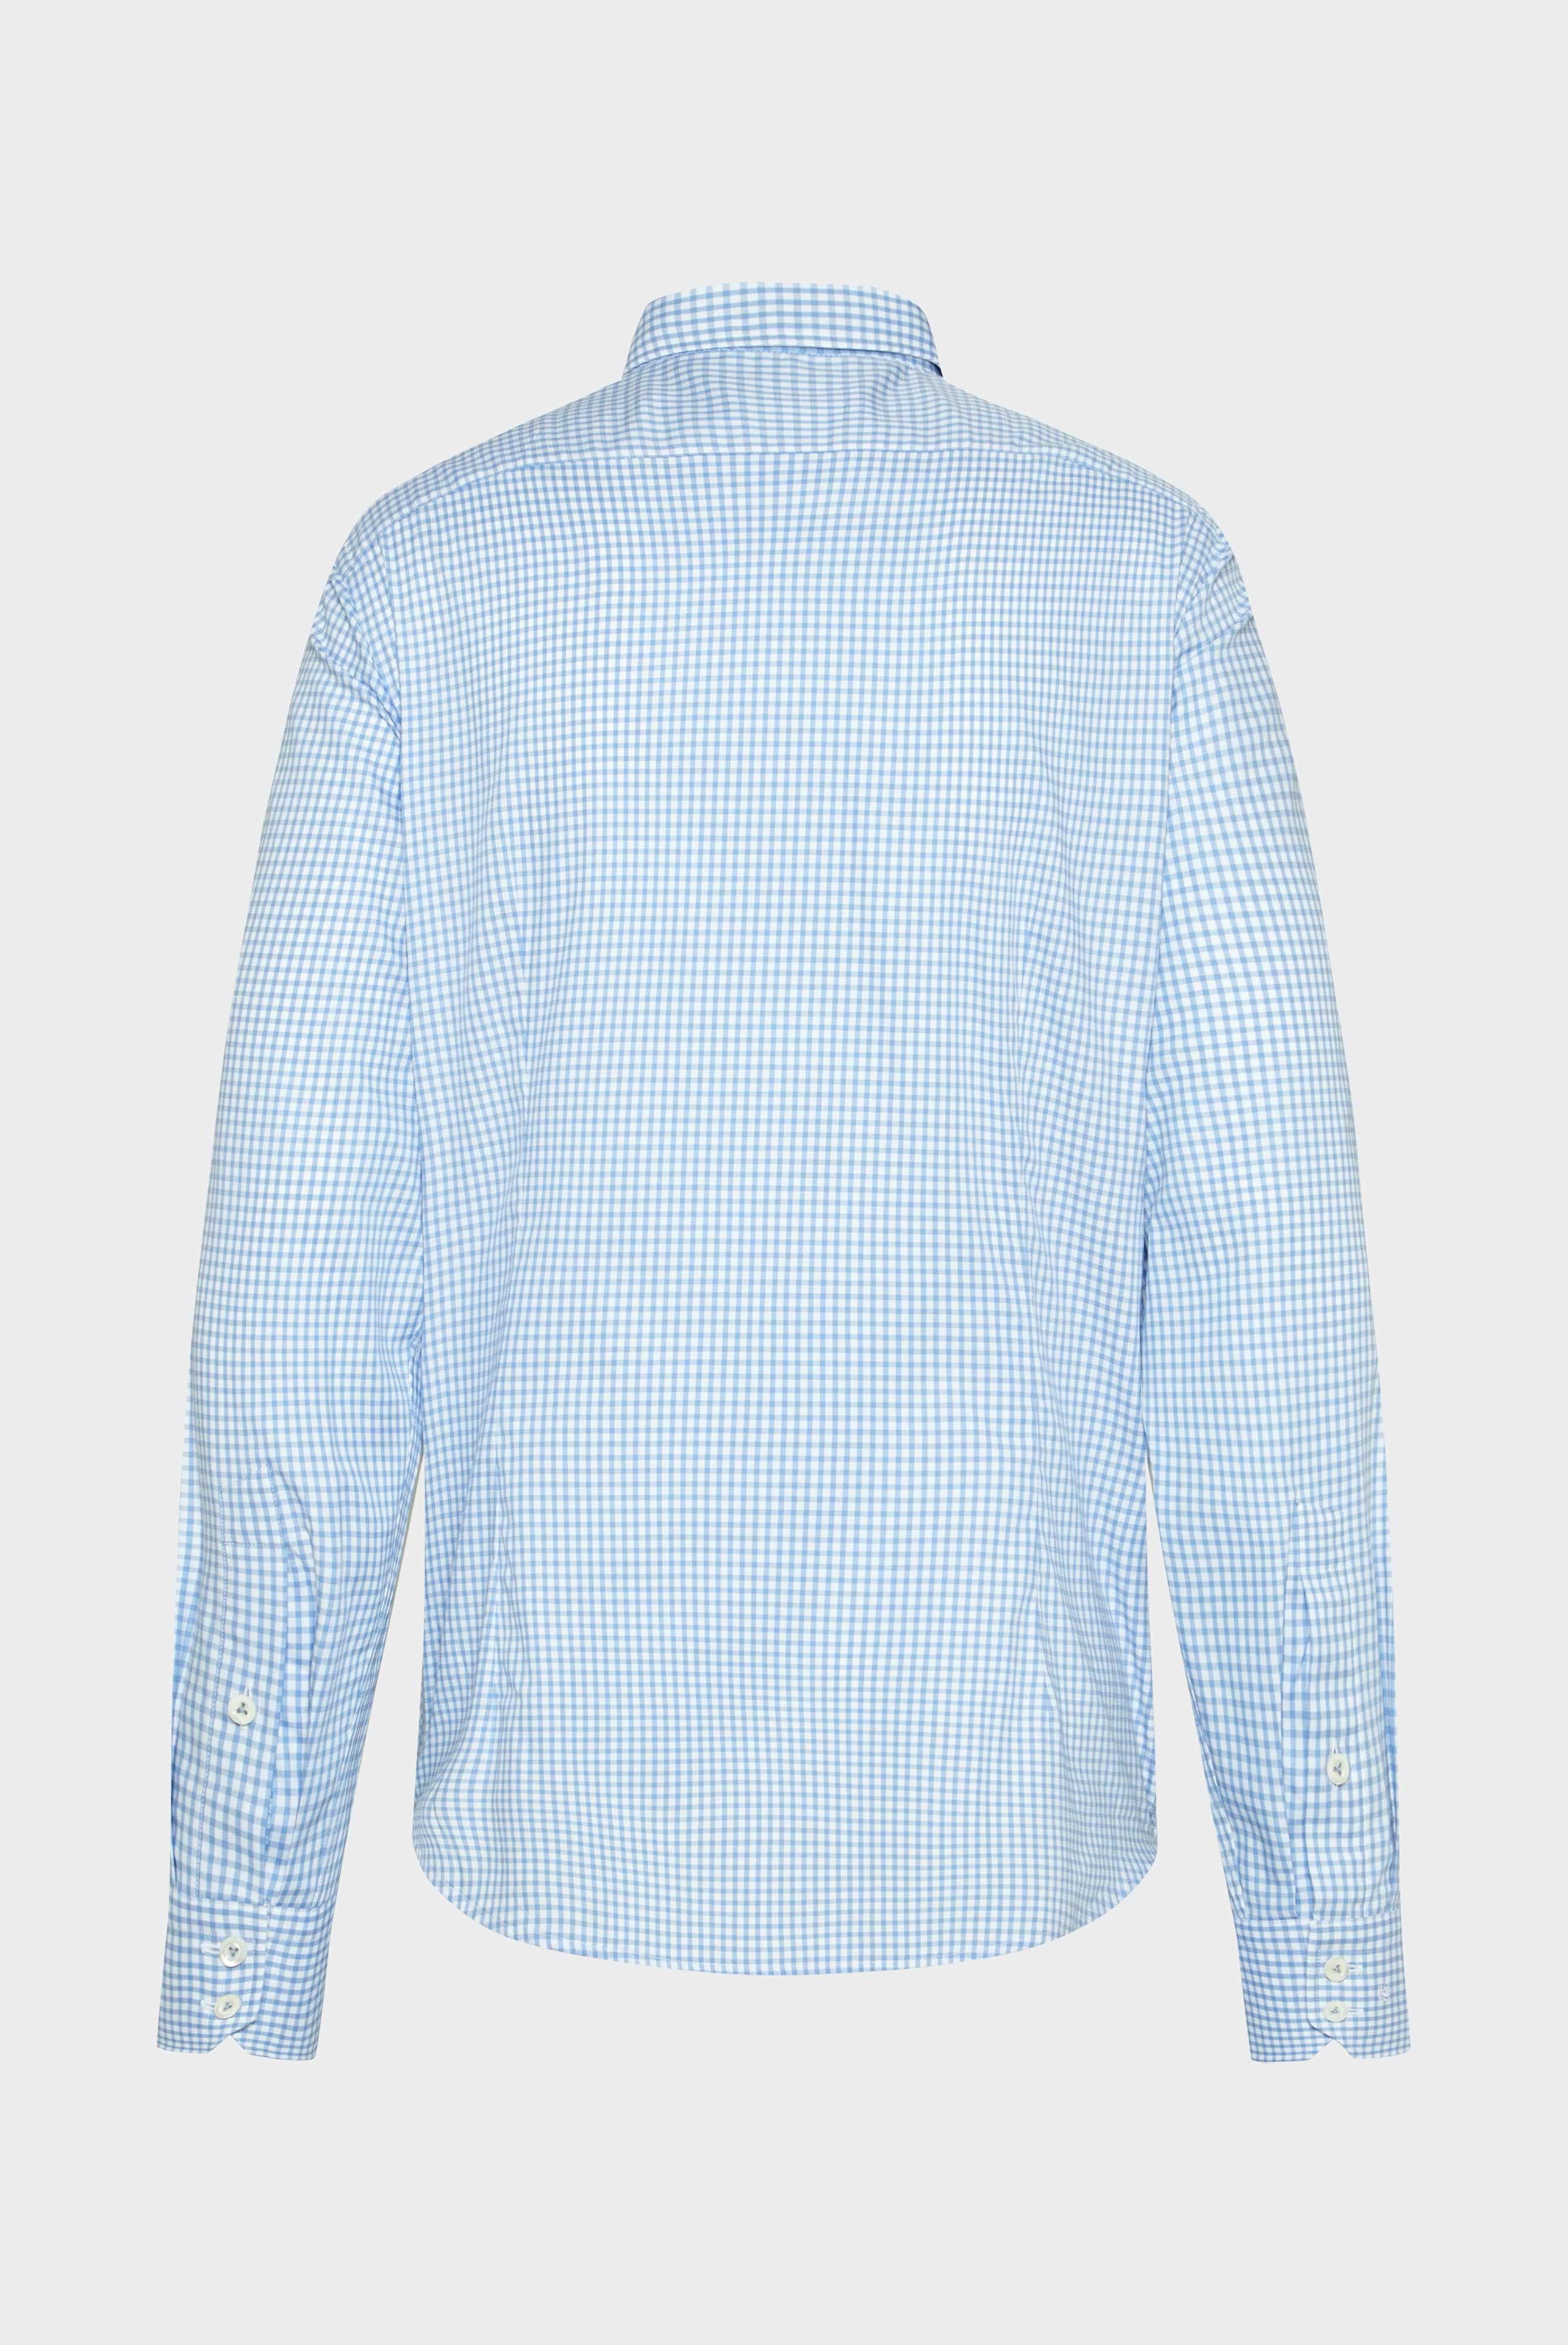 Bügelleichte Hemden+Bügelfreies Hemd aus Bio-Baumwolle Tailor Fit+20.3281.NV.166011.720.37